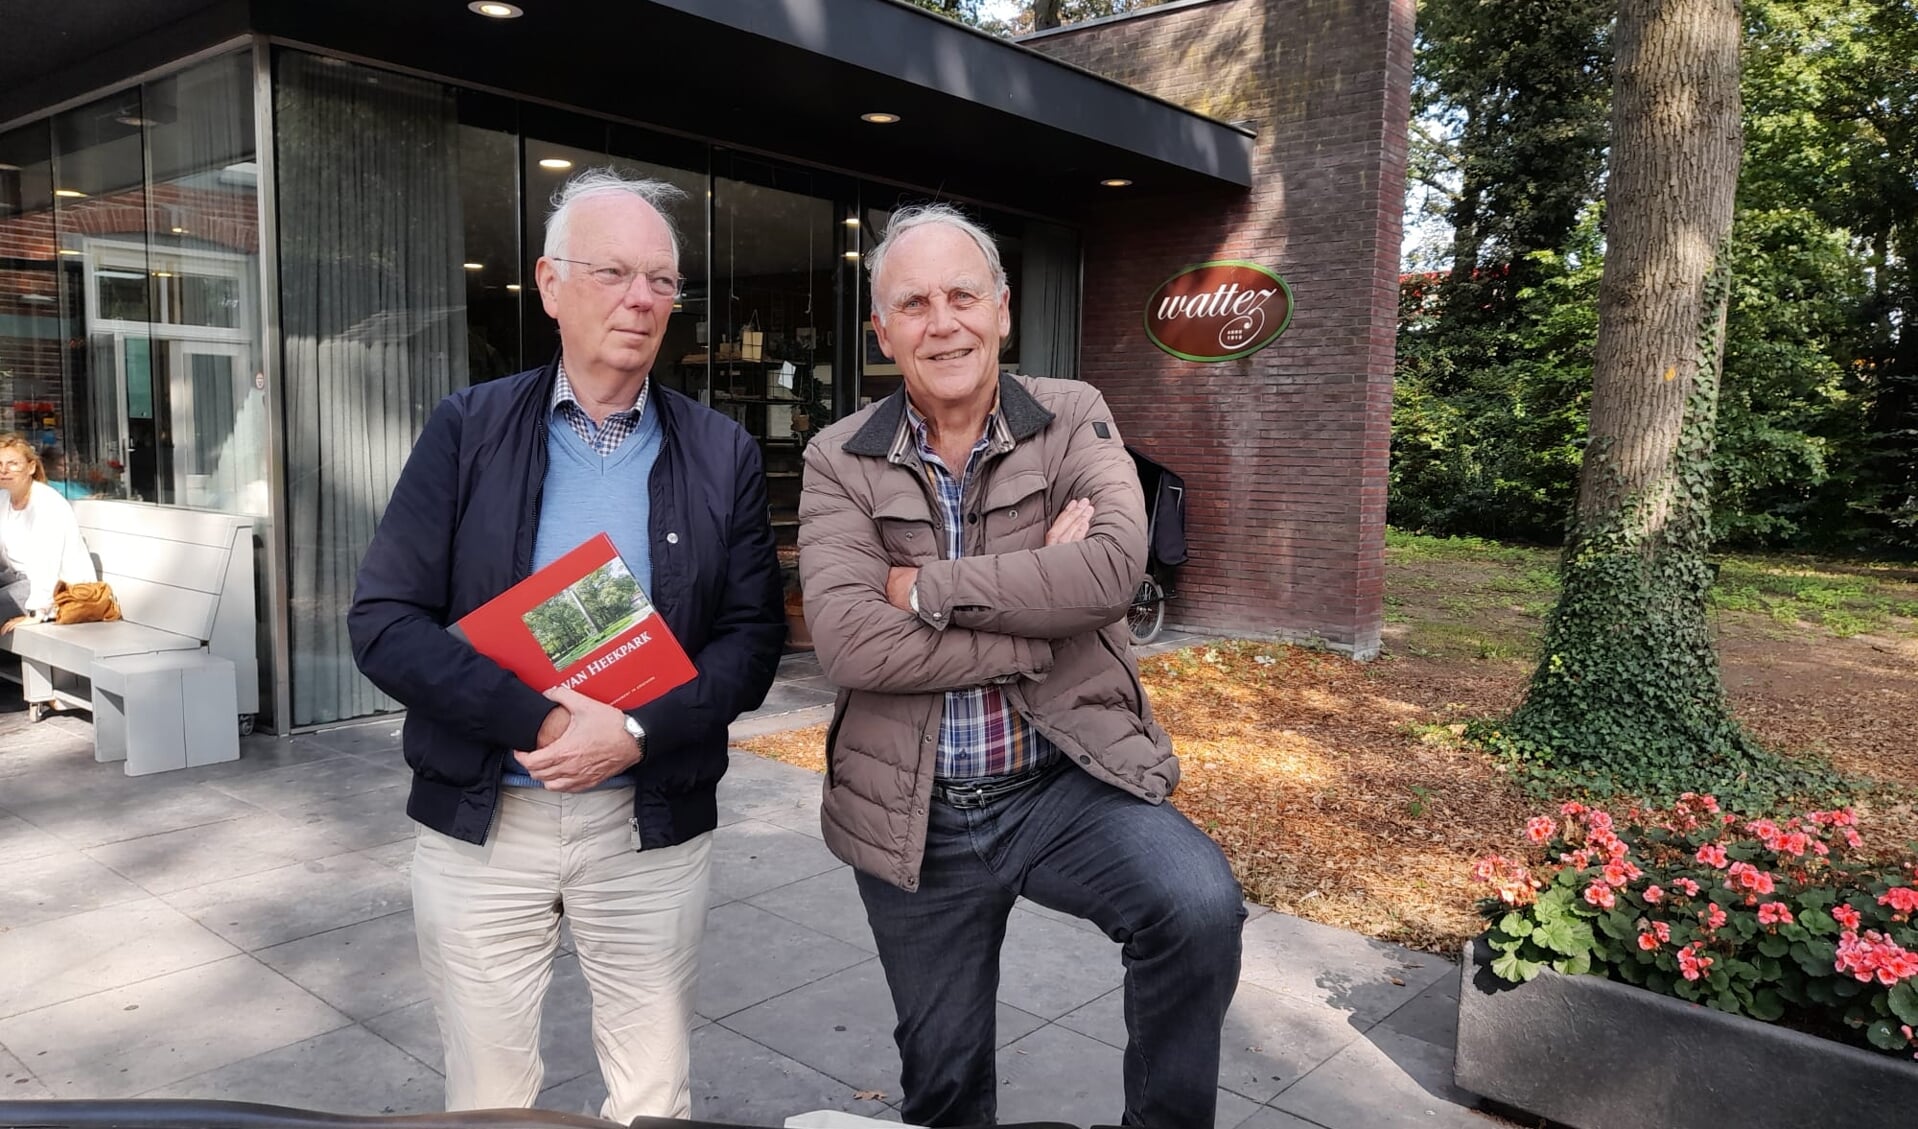 Martien Molenaar (met jubileumboek in de handen) en Gerard Oude Vrielink bij Wattez.